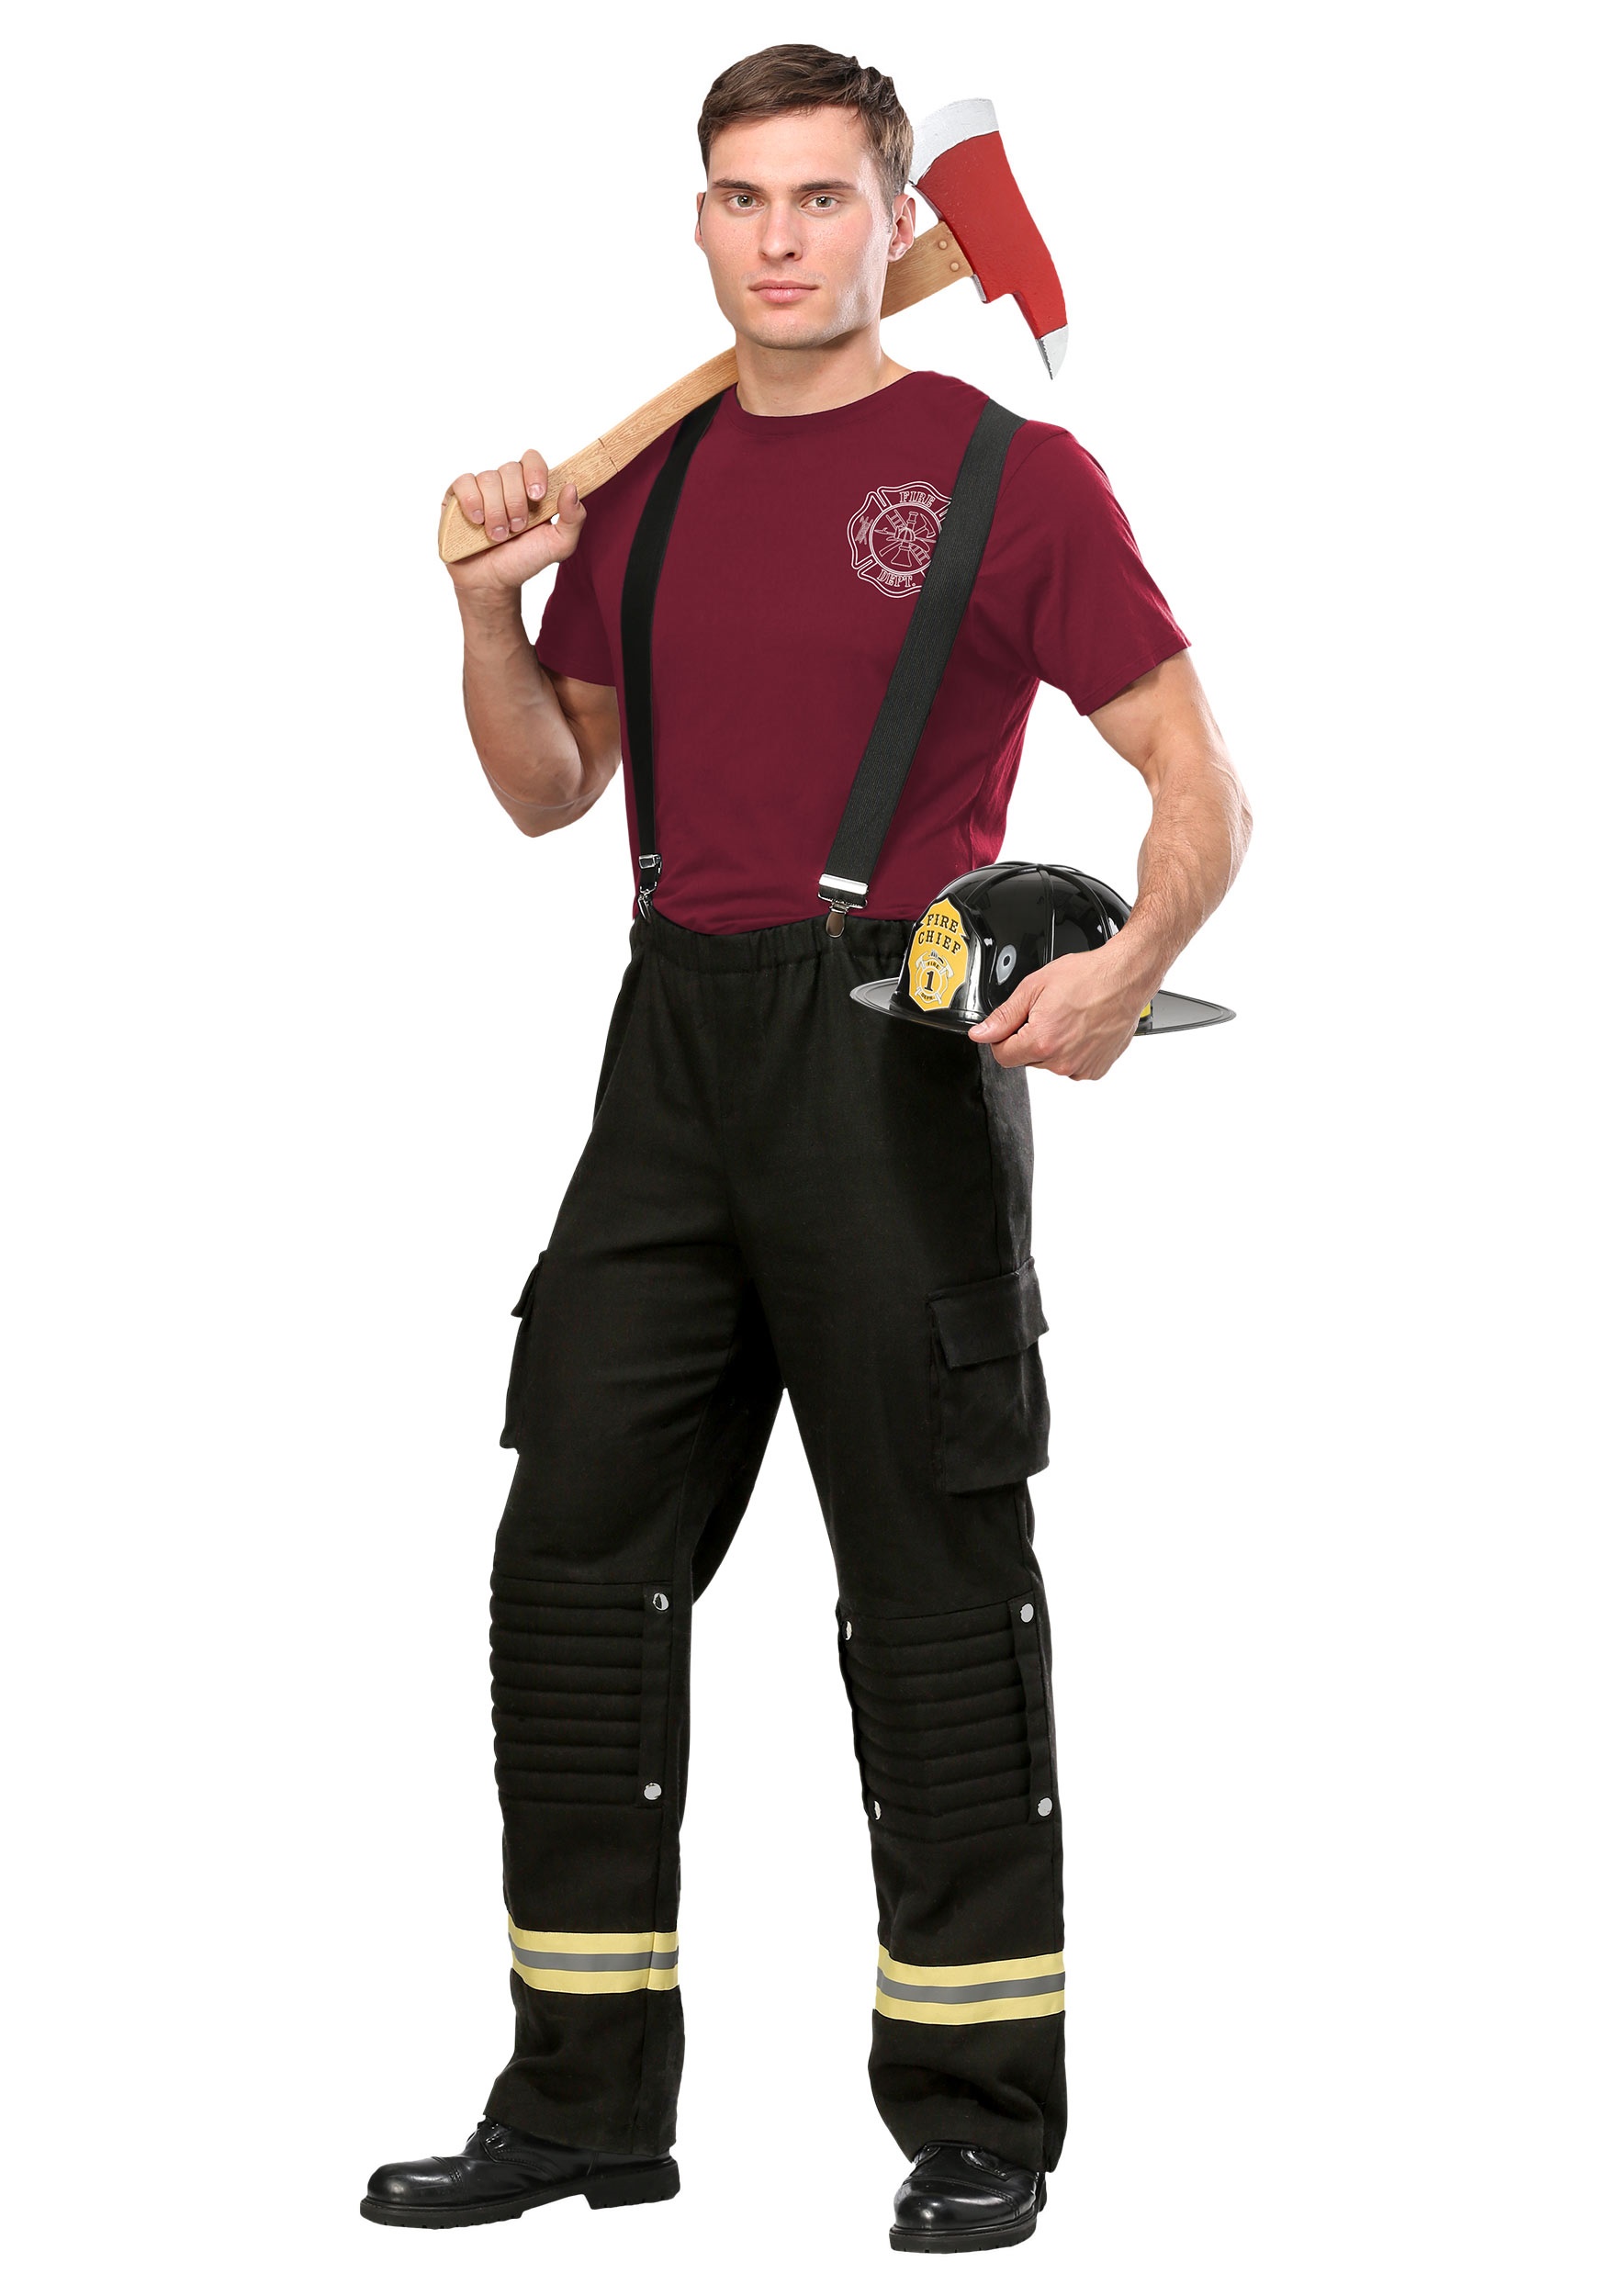 Mens firefighter costume